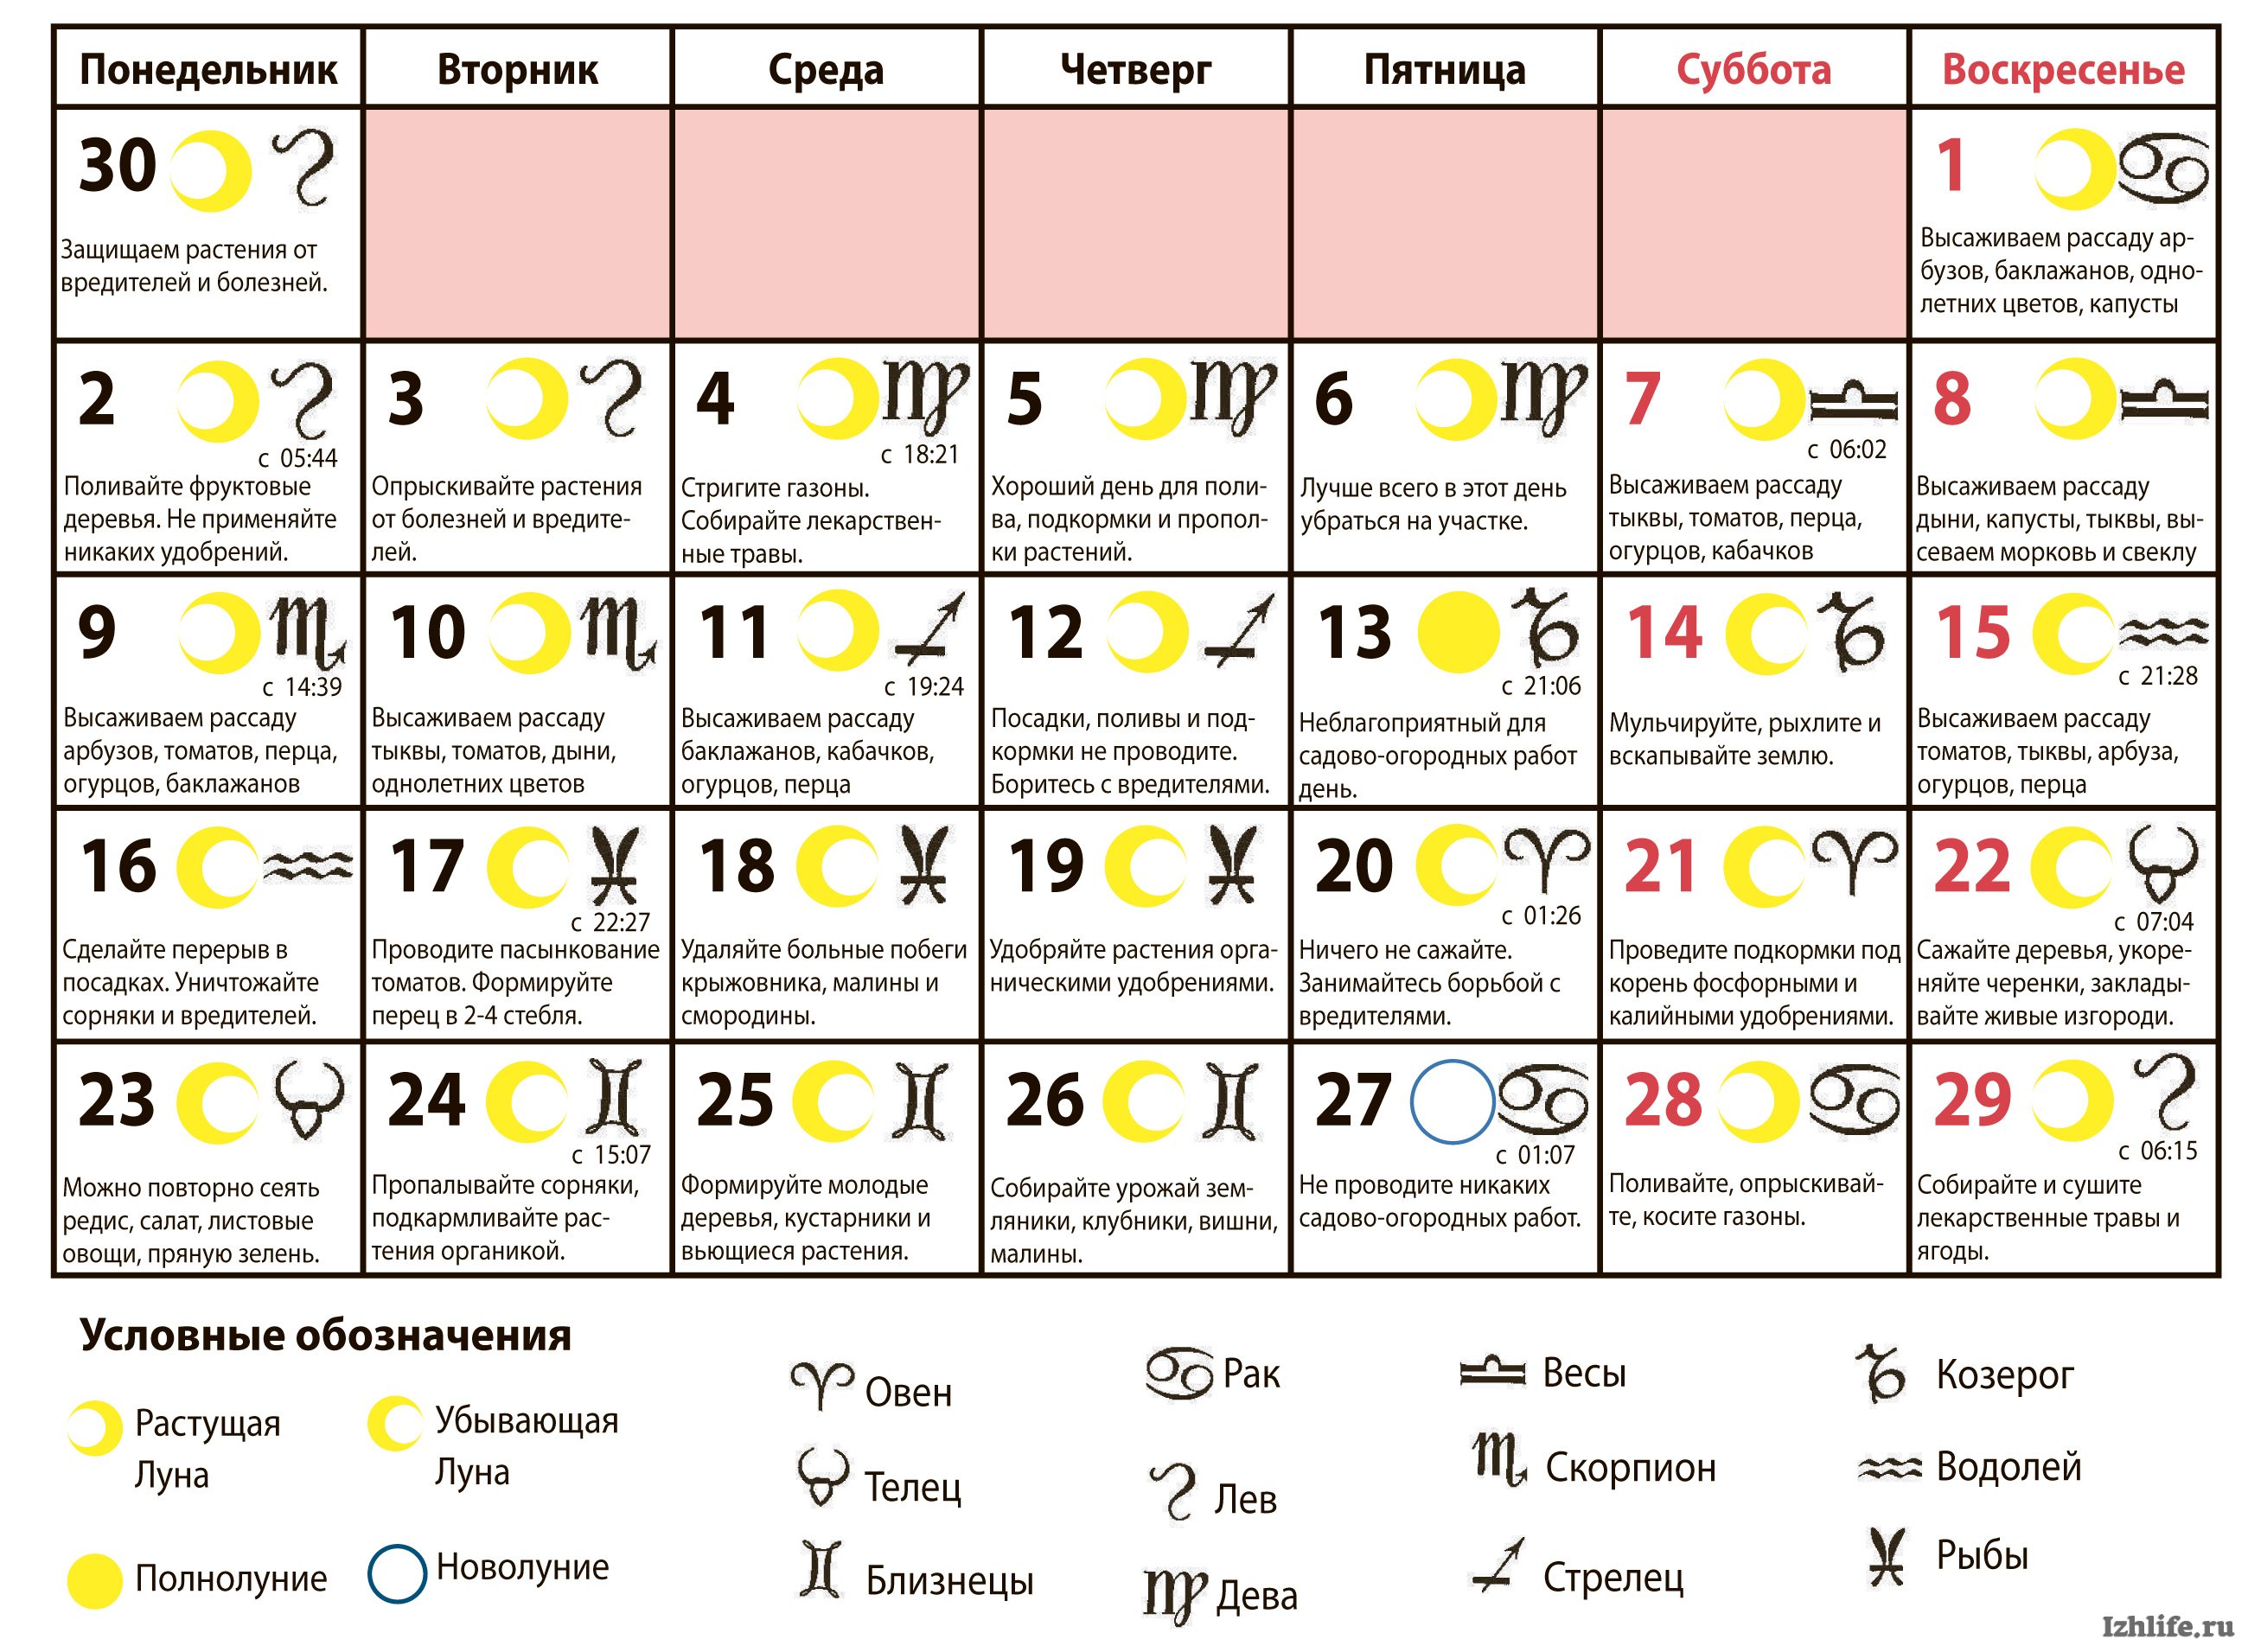 Луна в знаке в июне. Лунный календарь на июнь. Лунный календарь на июнь месяц. Расписание лунного календаря на июнь. Показать лунный календарь на июнь.